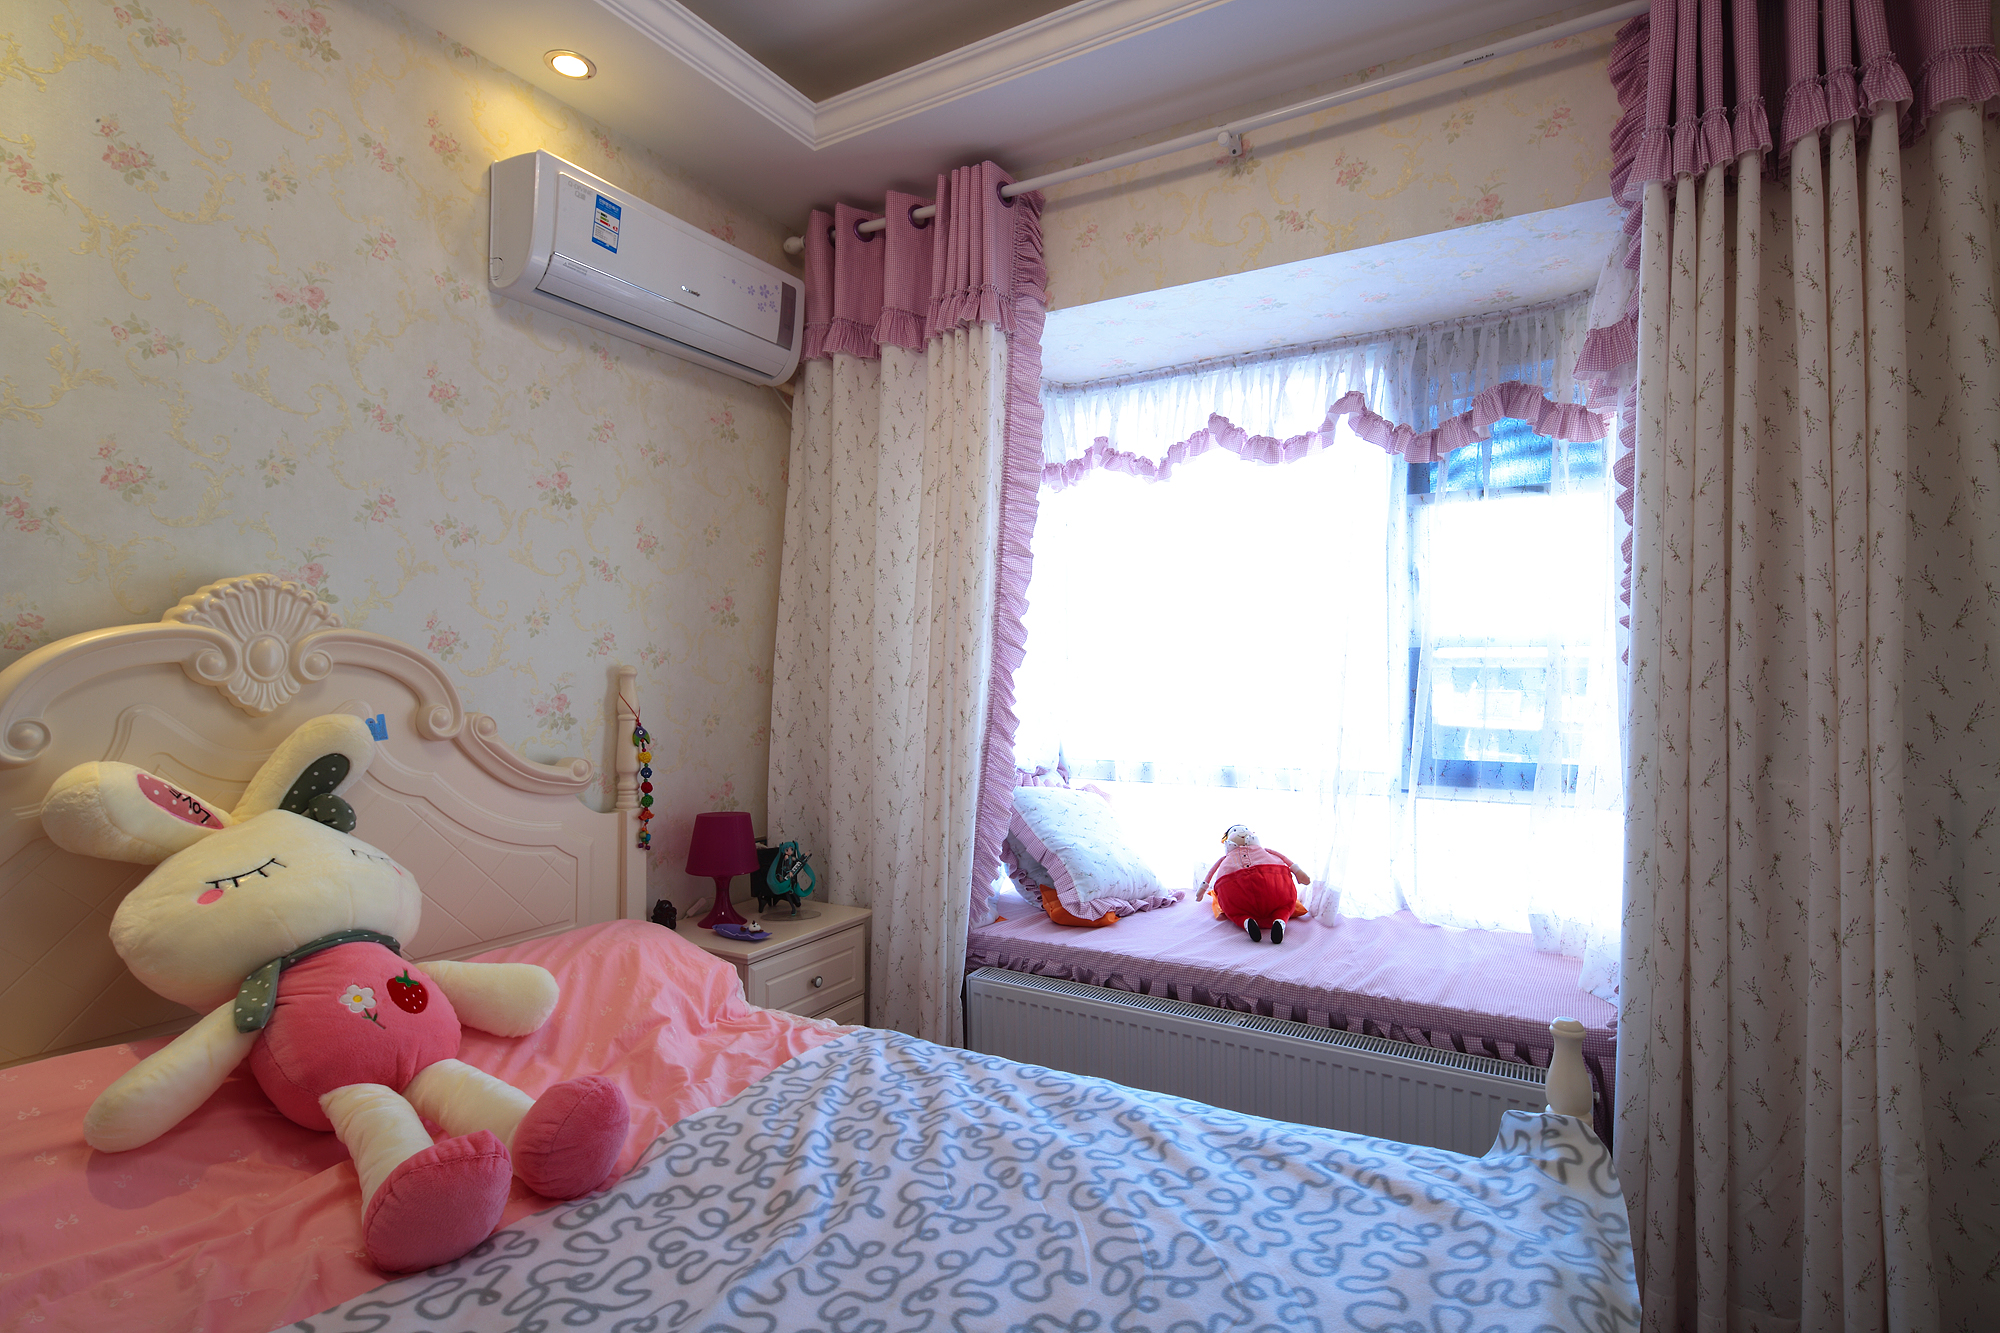 混搭 一号家居 卧室图片来自武汉一号家居在葛洲坝世际花园完工实景效果图的分享